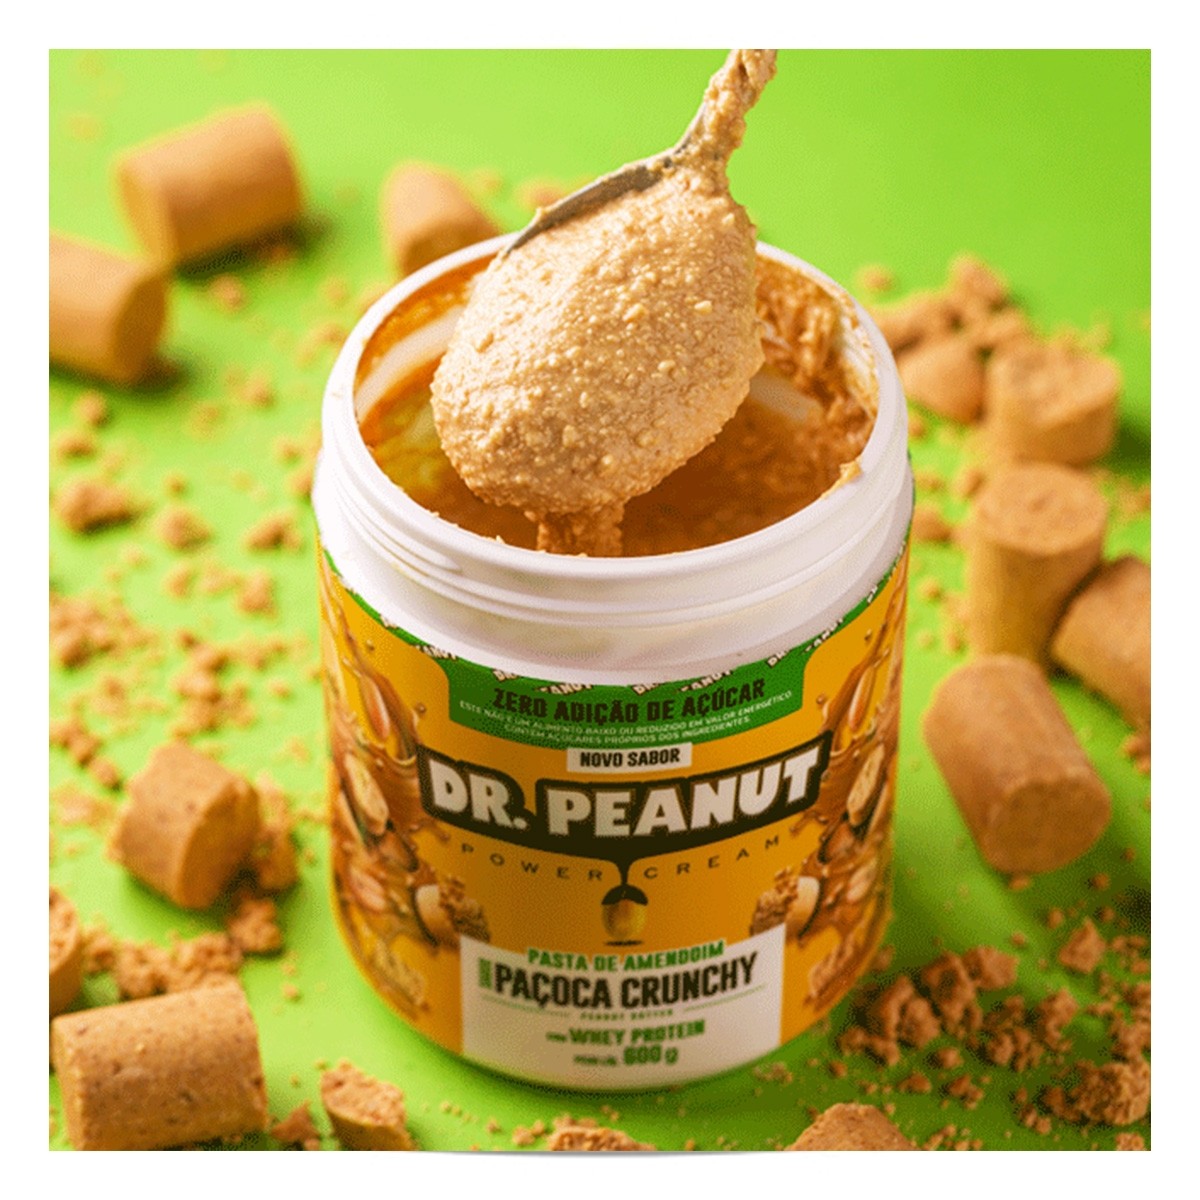 DR Peanut Bueníssimo 600g Pasta de Amendoim Com Whey Protein